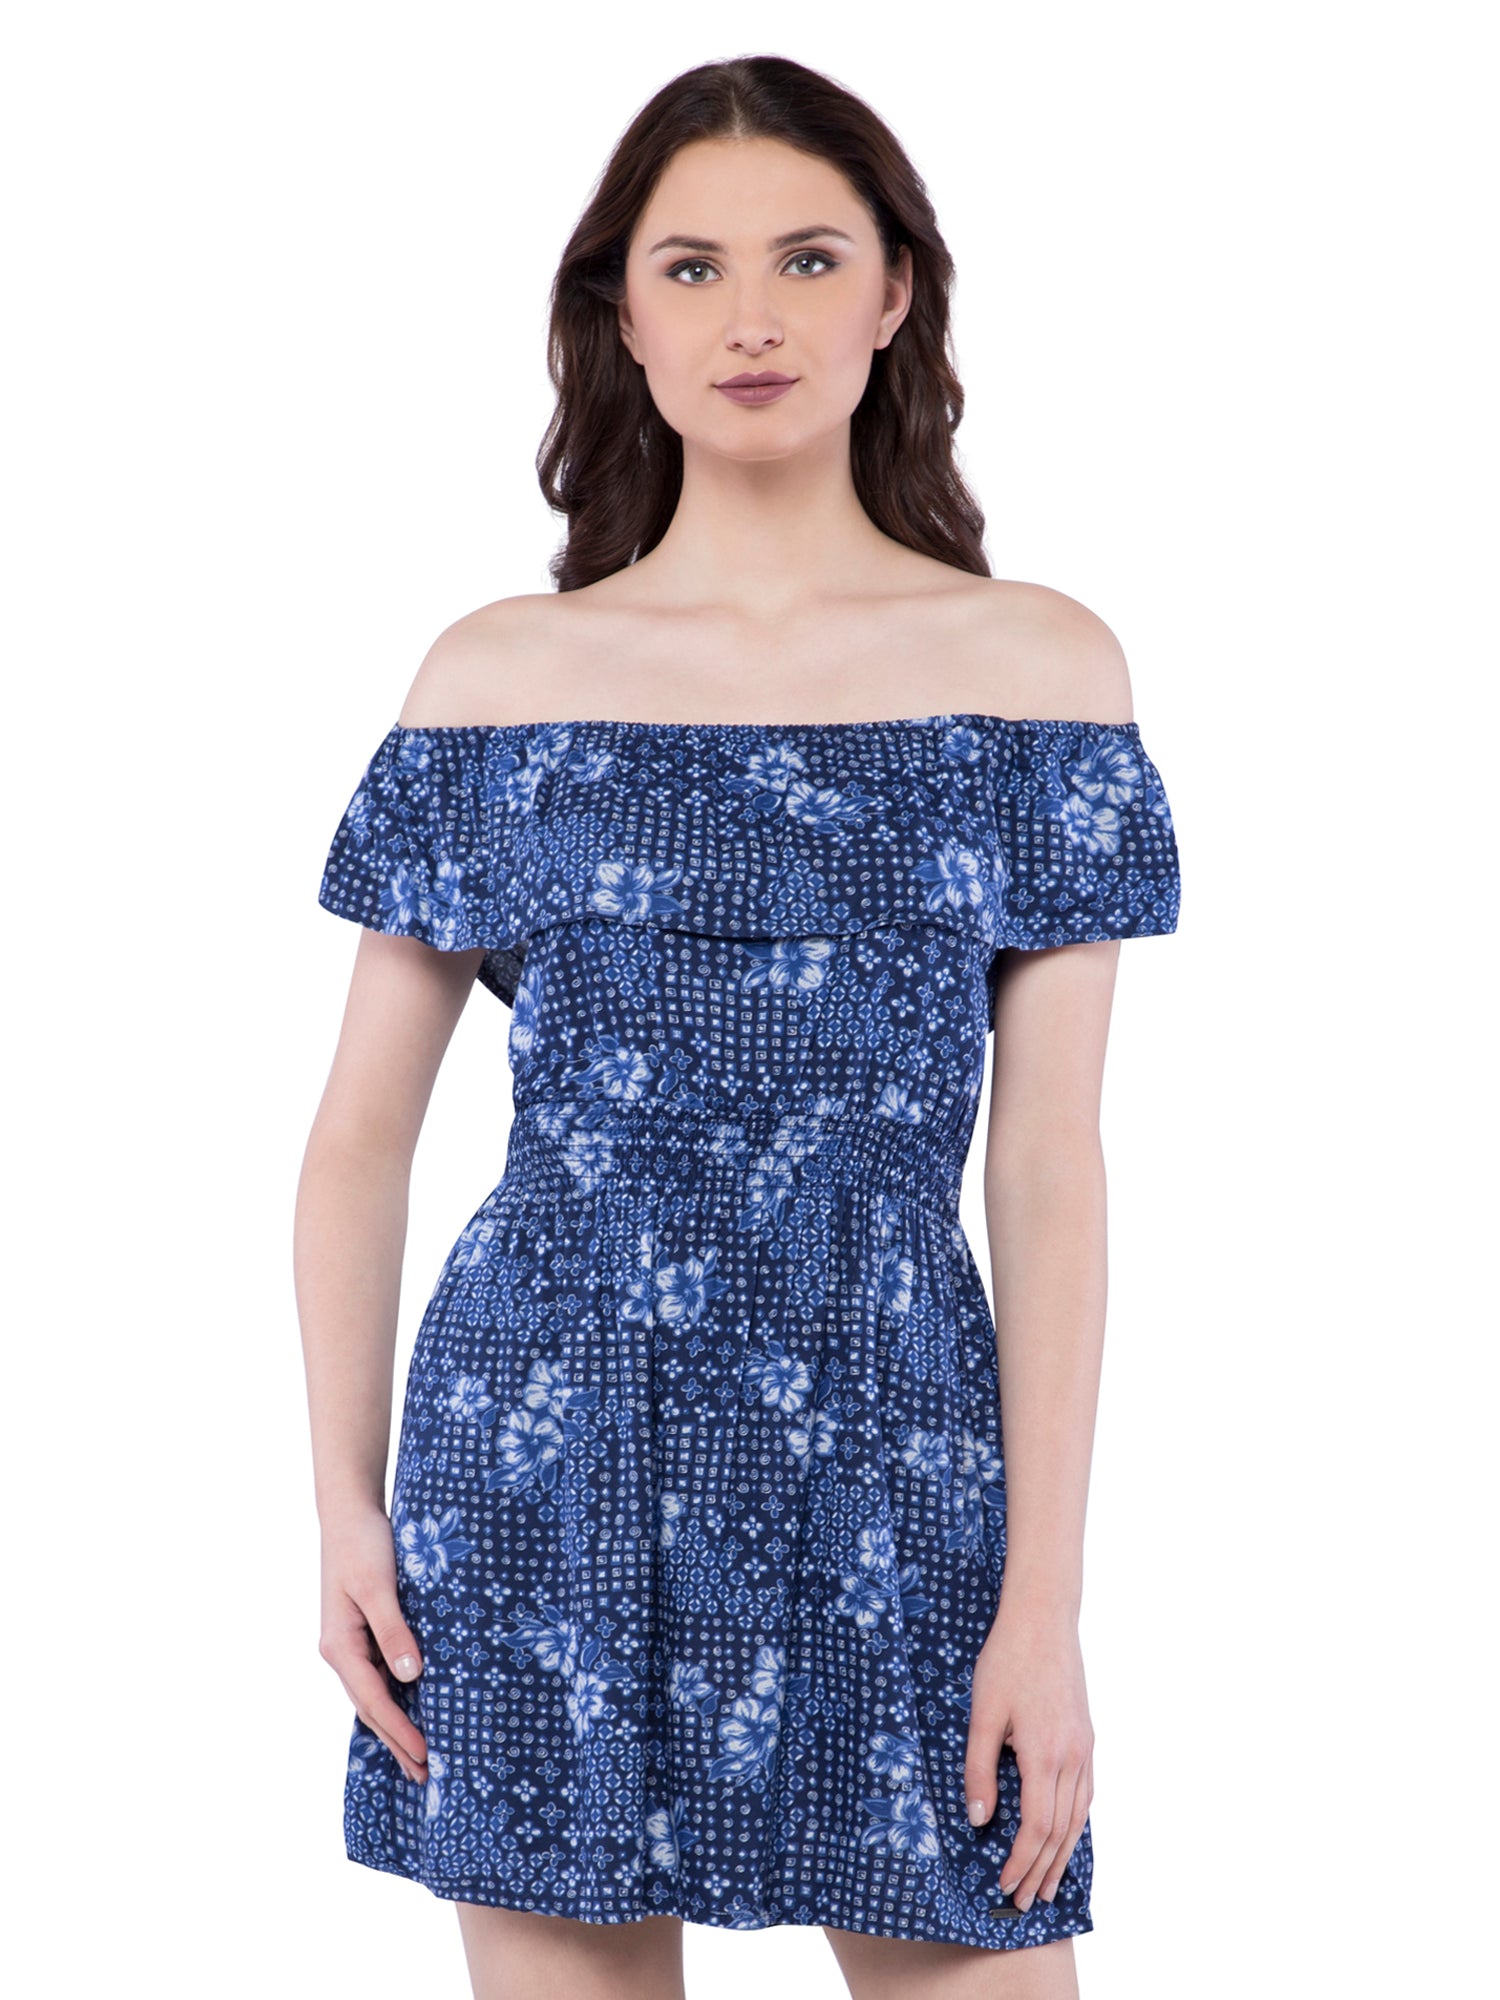 hollister blue lace dress